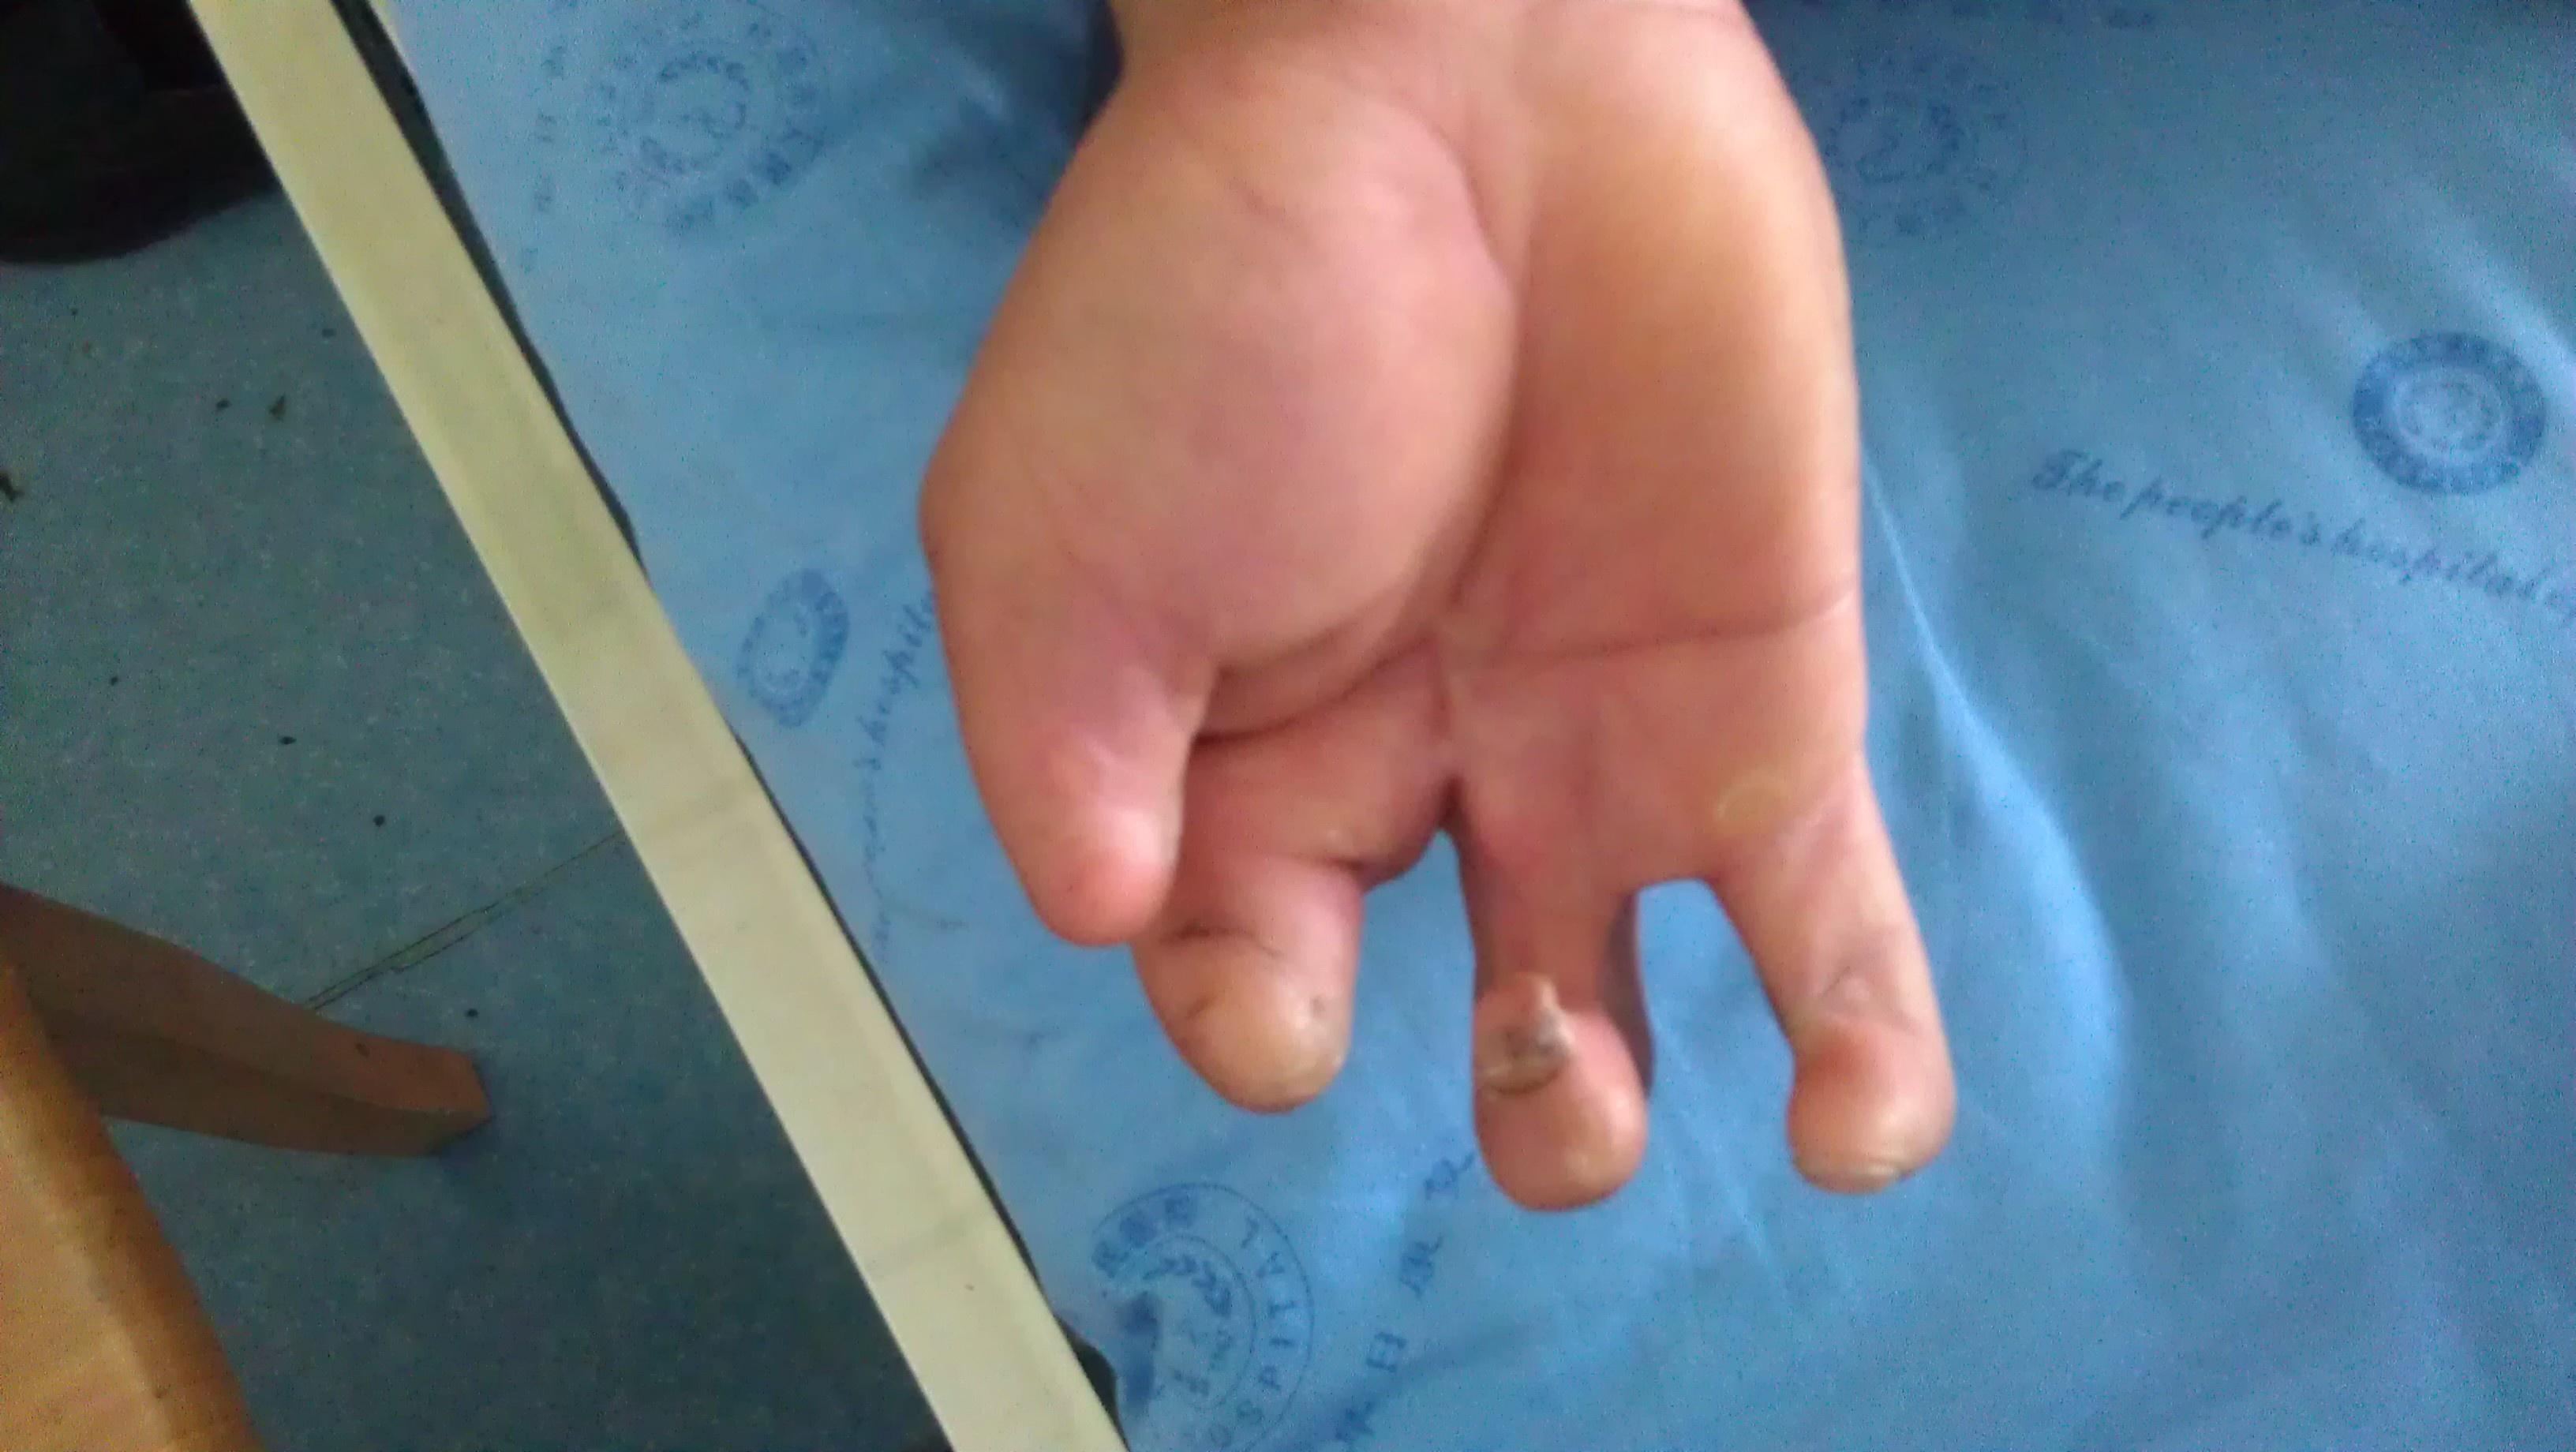 患者系男性 35岁 右手爆竹炸伤后30余年 目前部分手指缺损